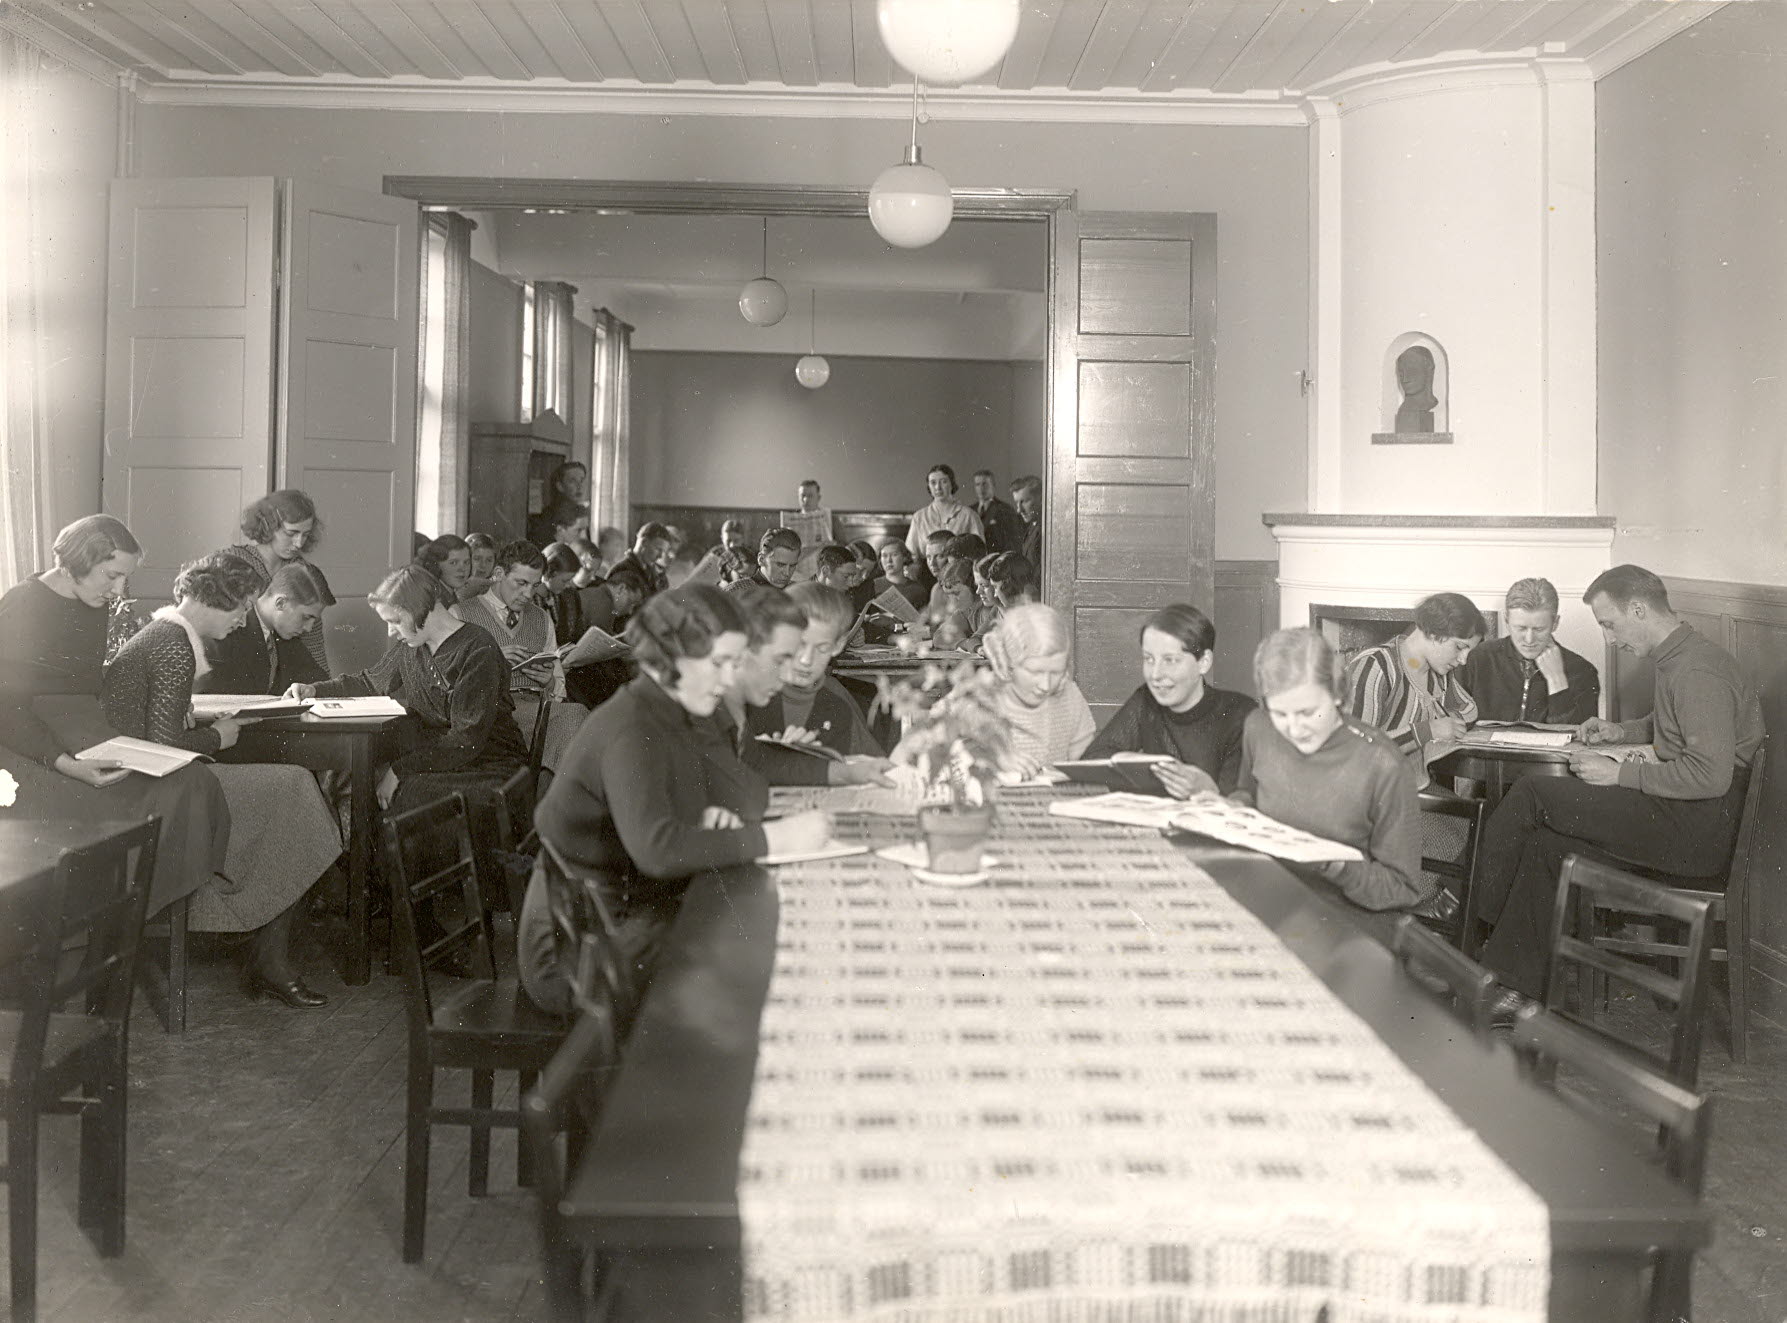 Studerande elever vid långa träbord i ett rum med kakelugn och vita runda glaslampor i taket.